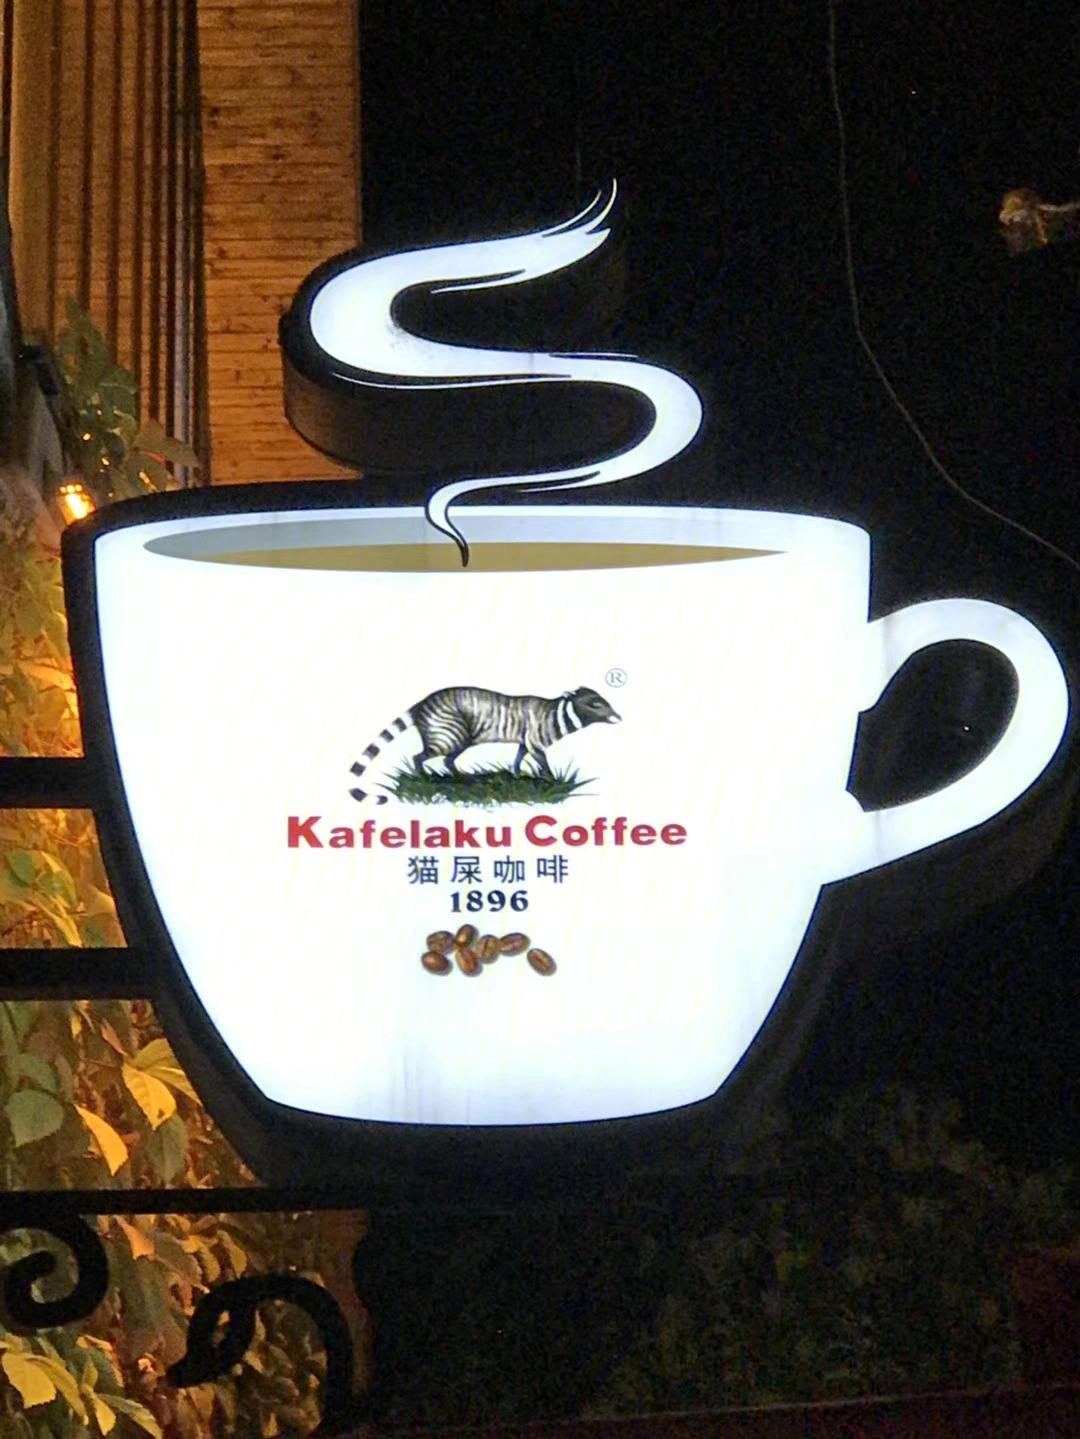 猫屎咖啡商标图片